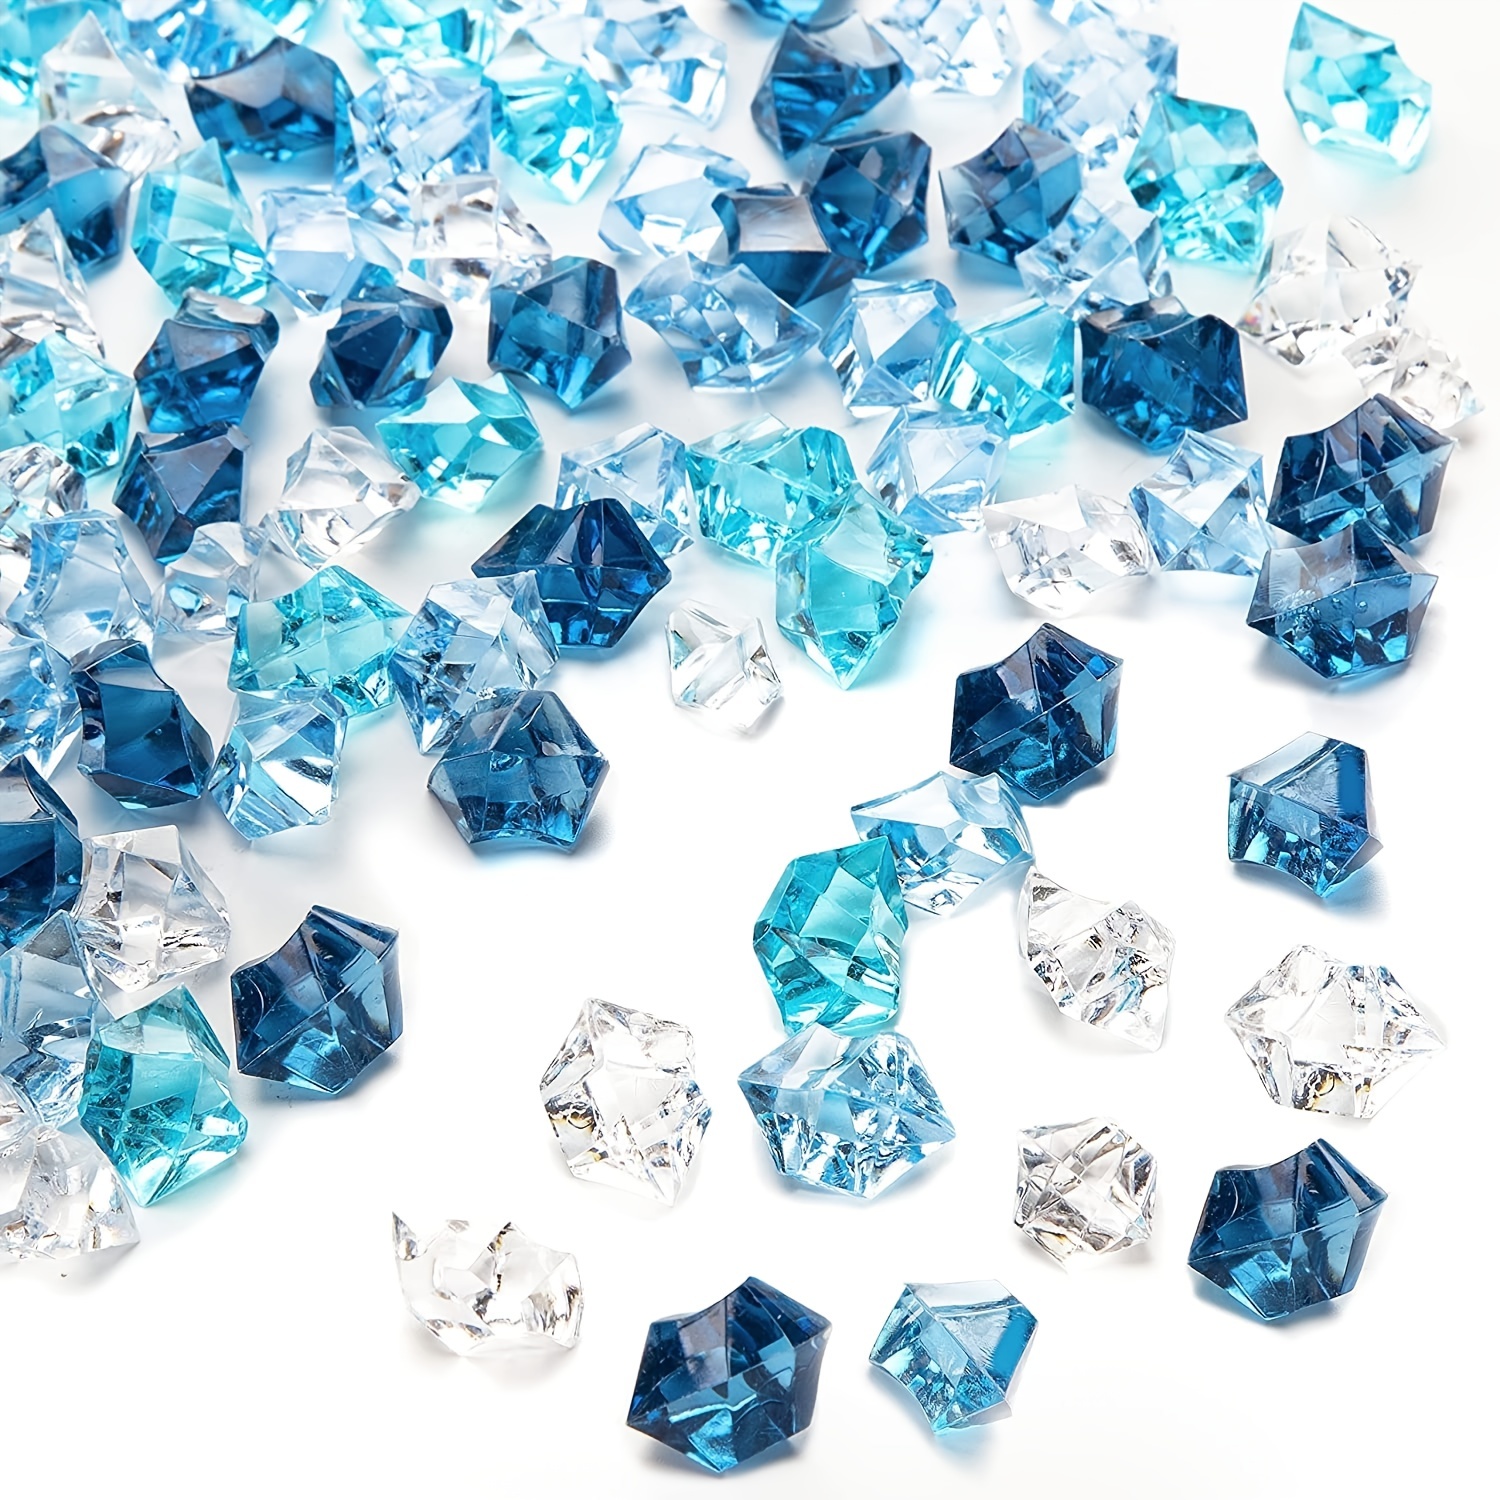 Real vs. fake diamonds, real ice